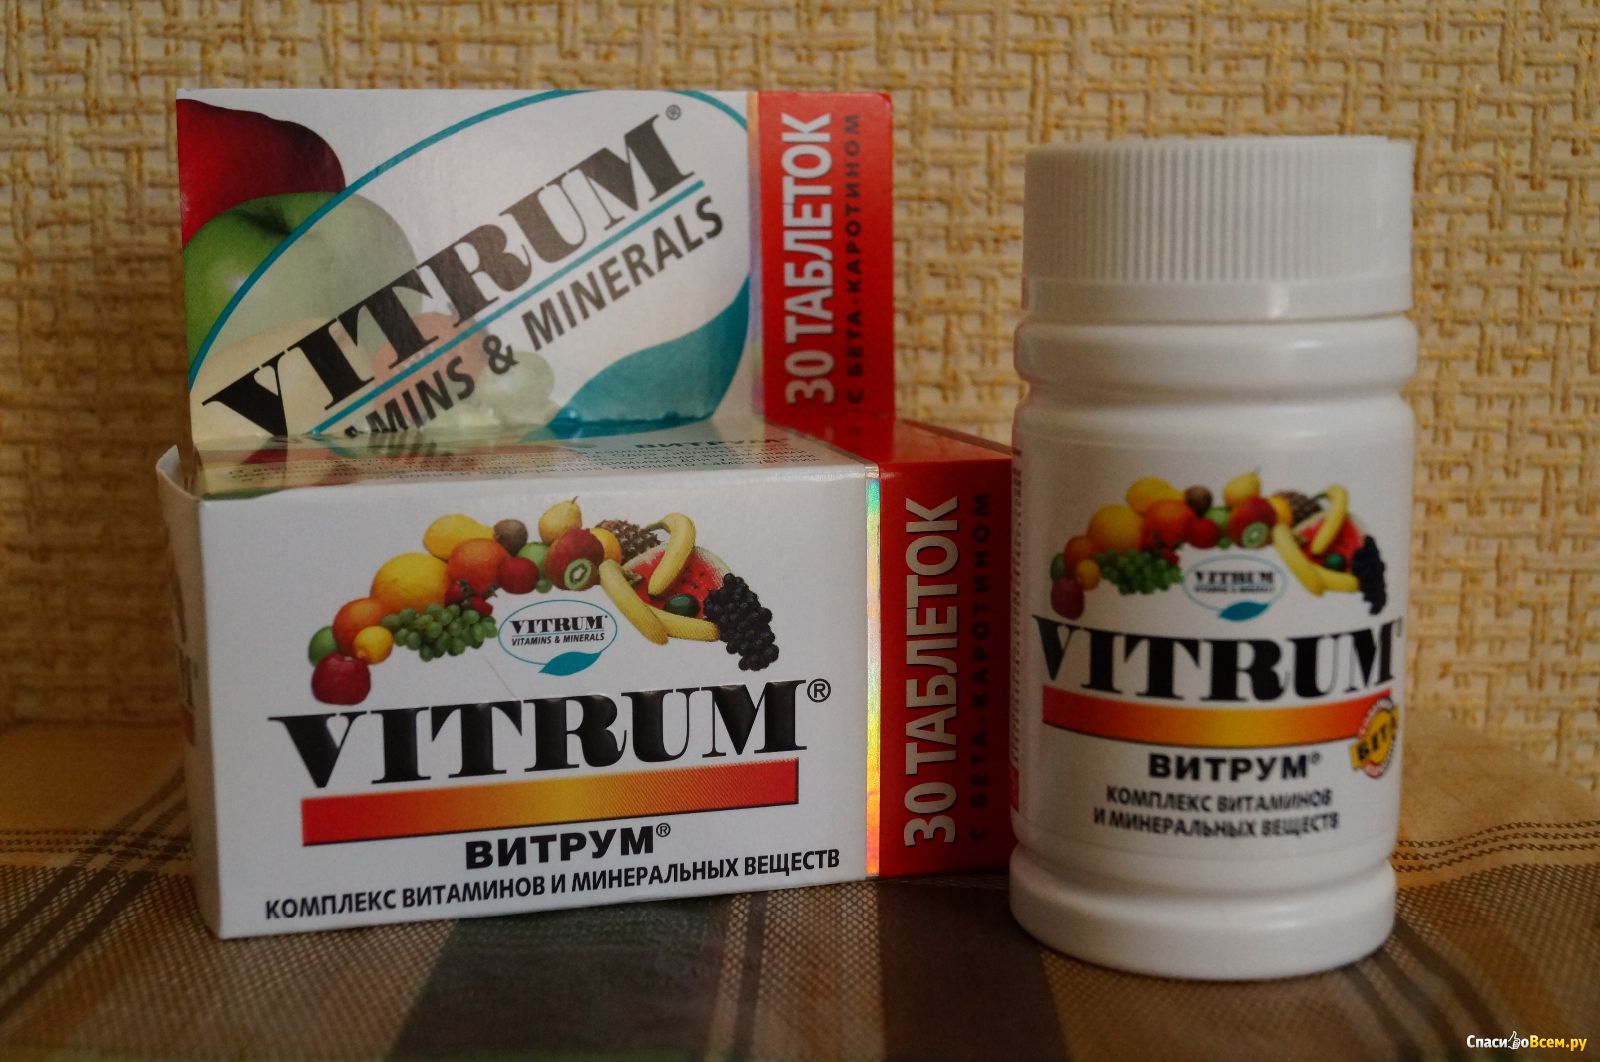 Витамины витрум для мужчин